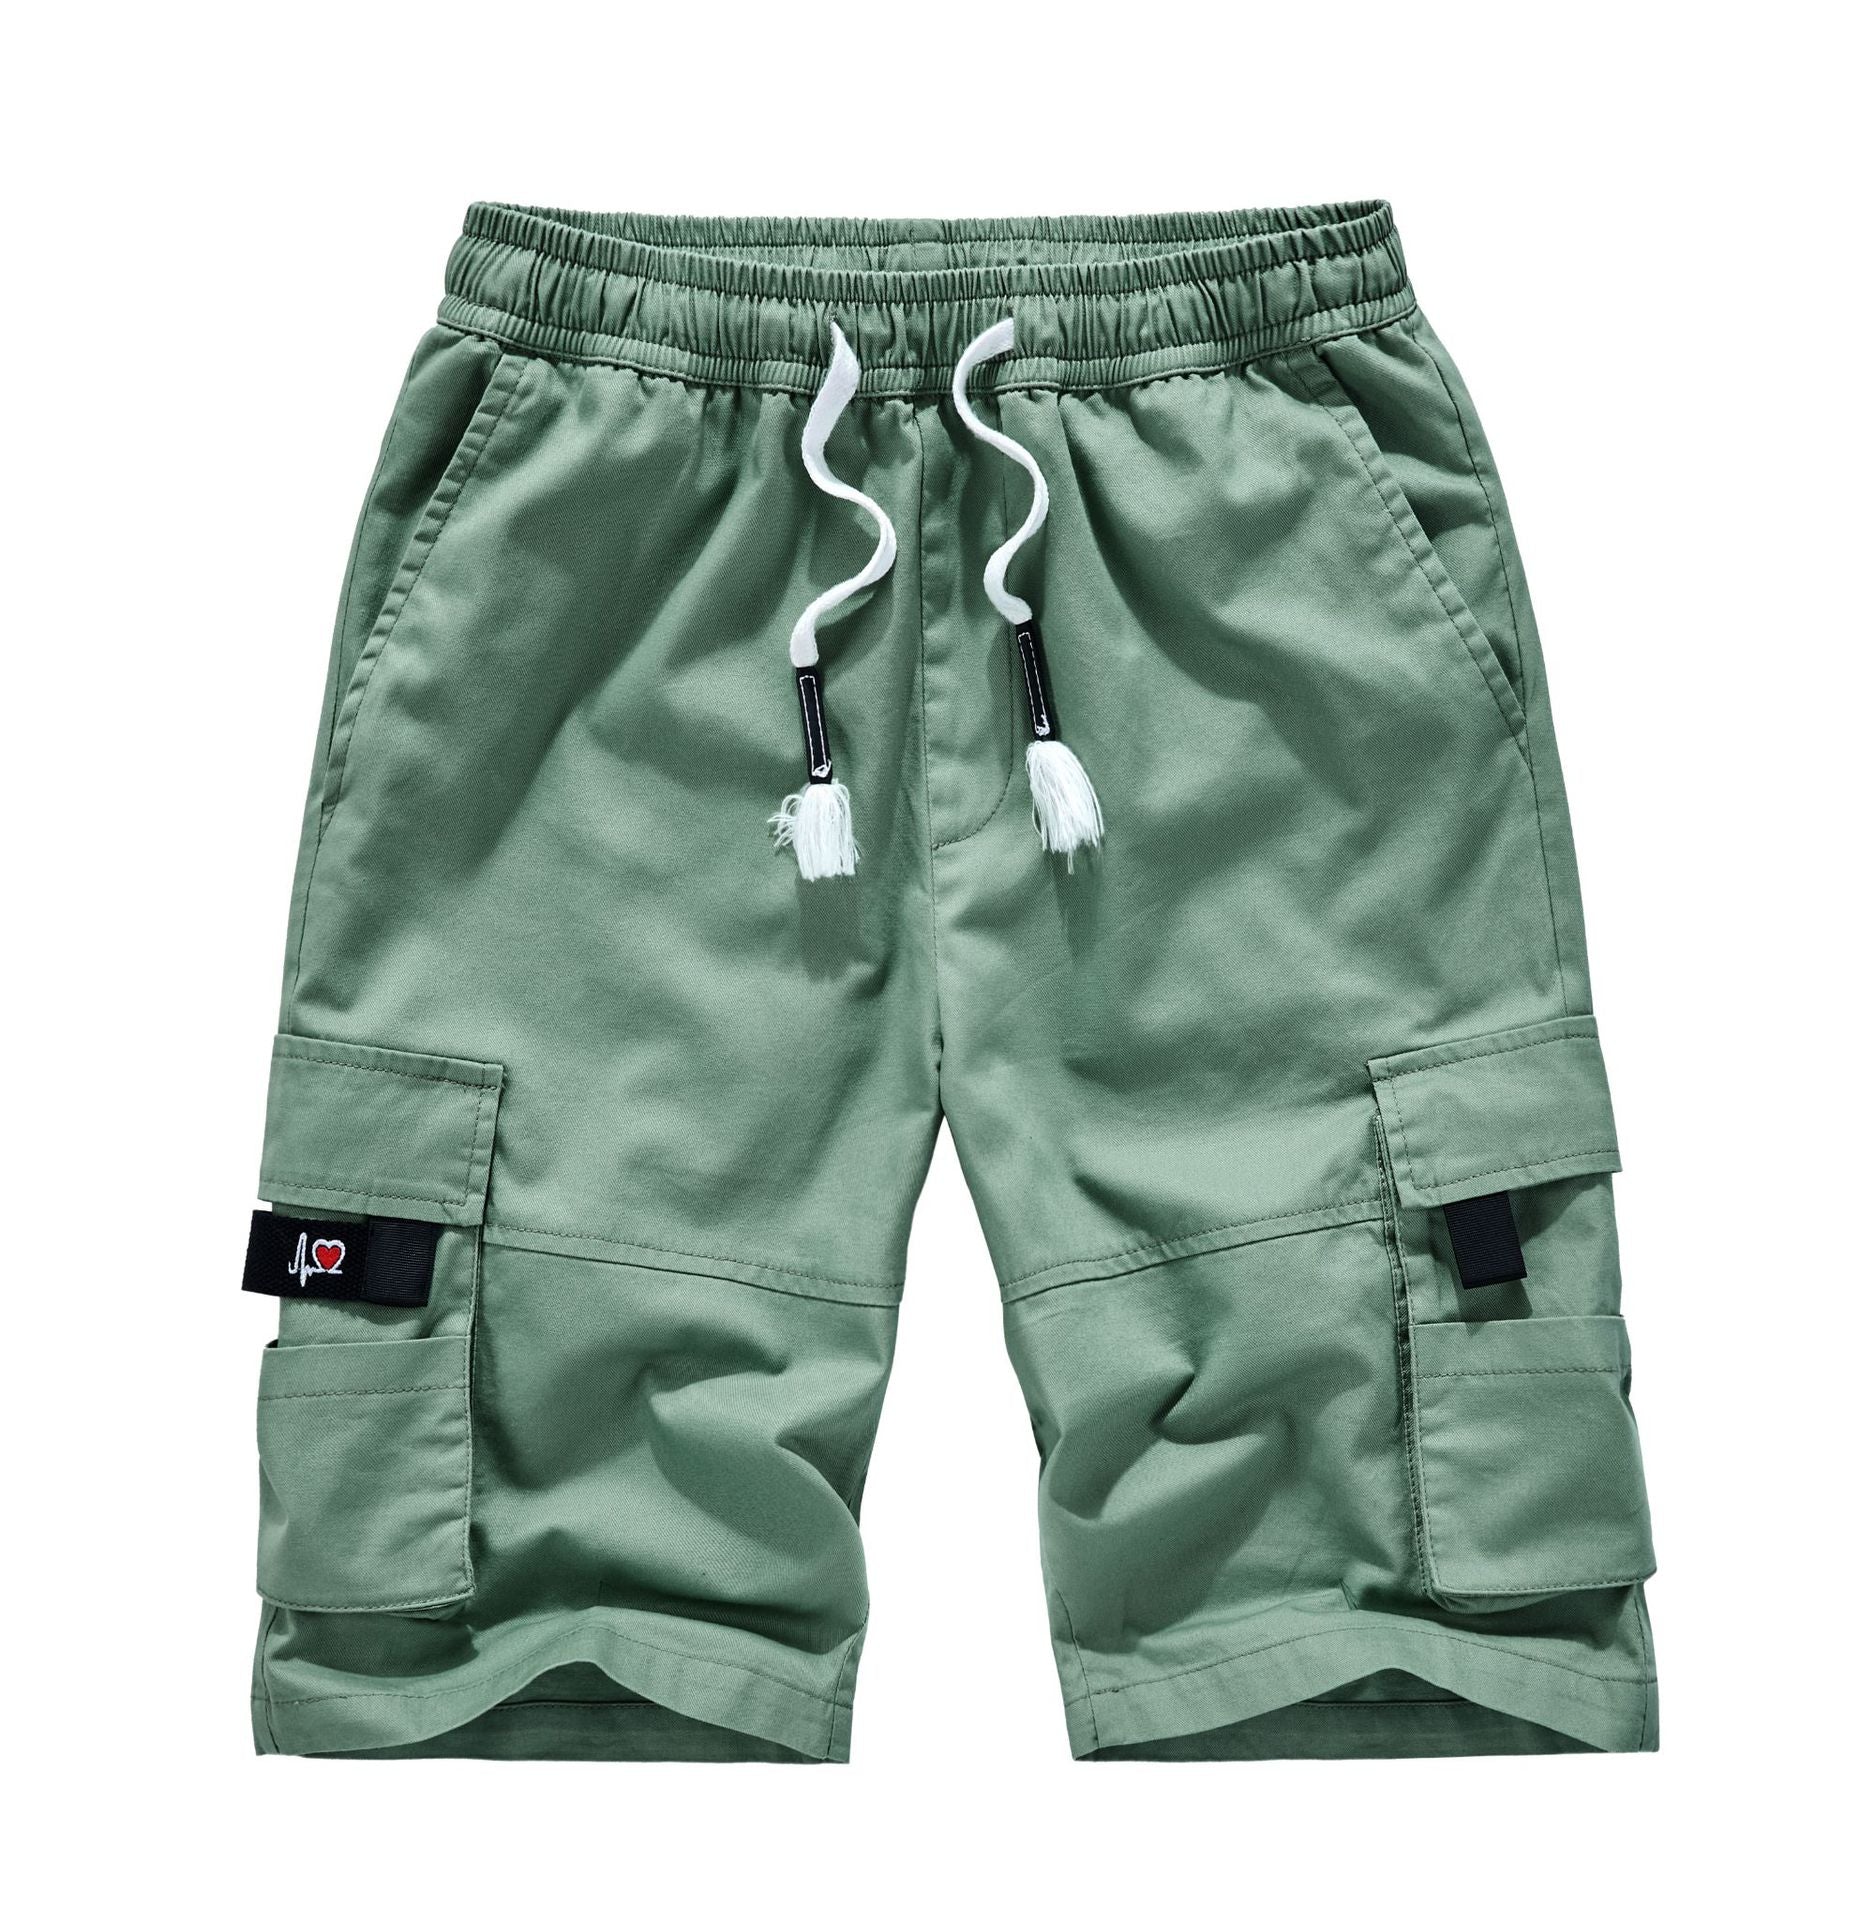 Men's Camo Pocket Print Casual Shorts